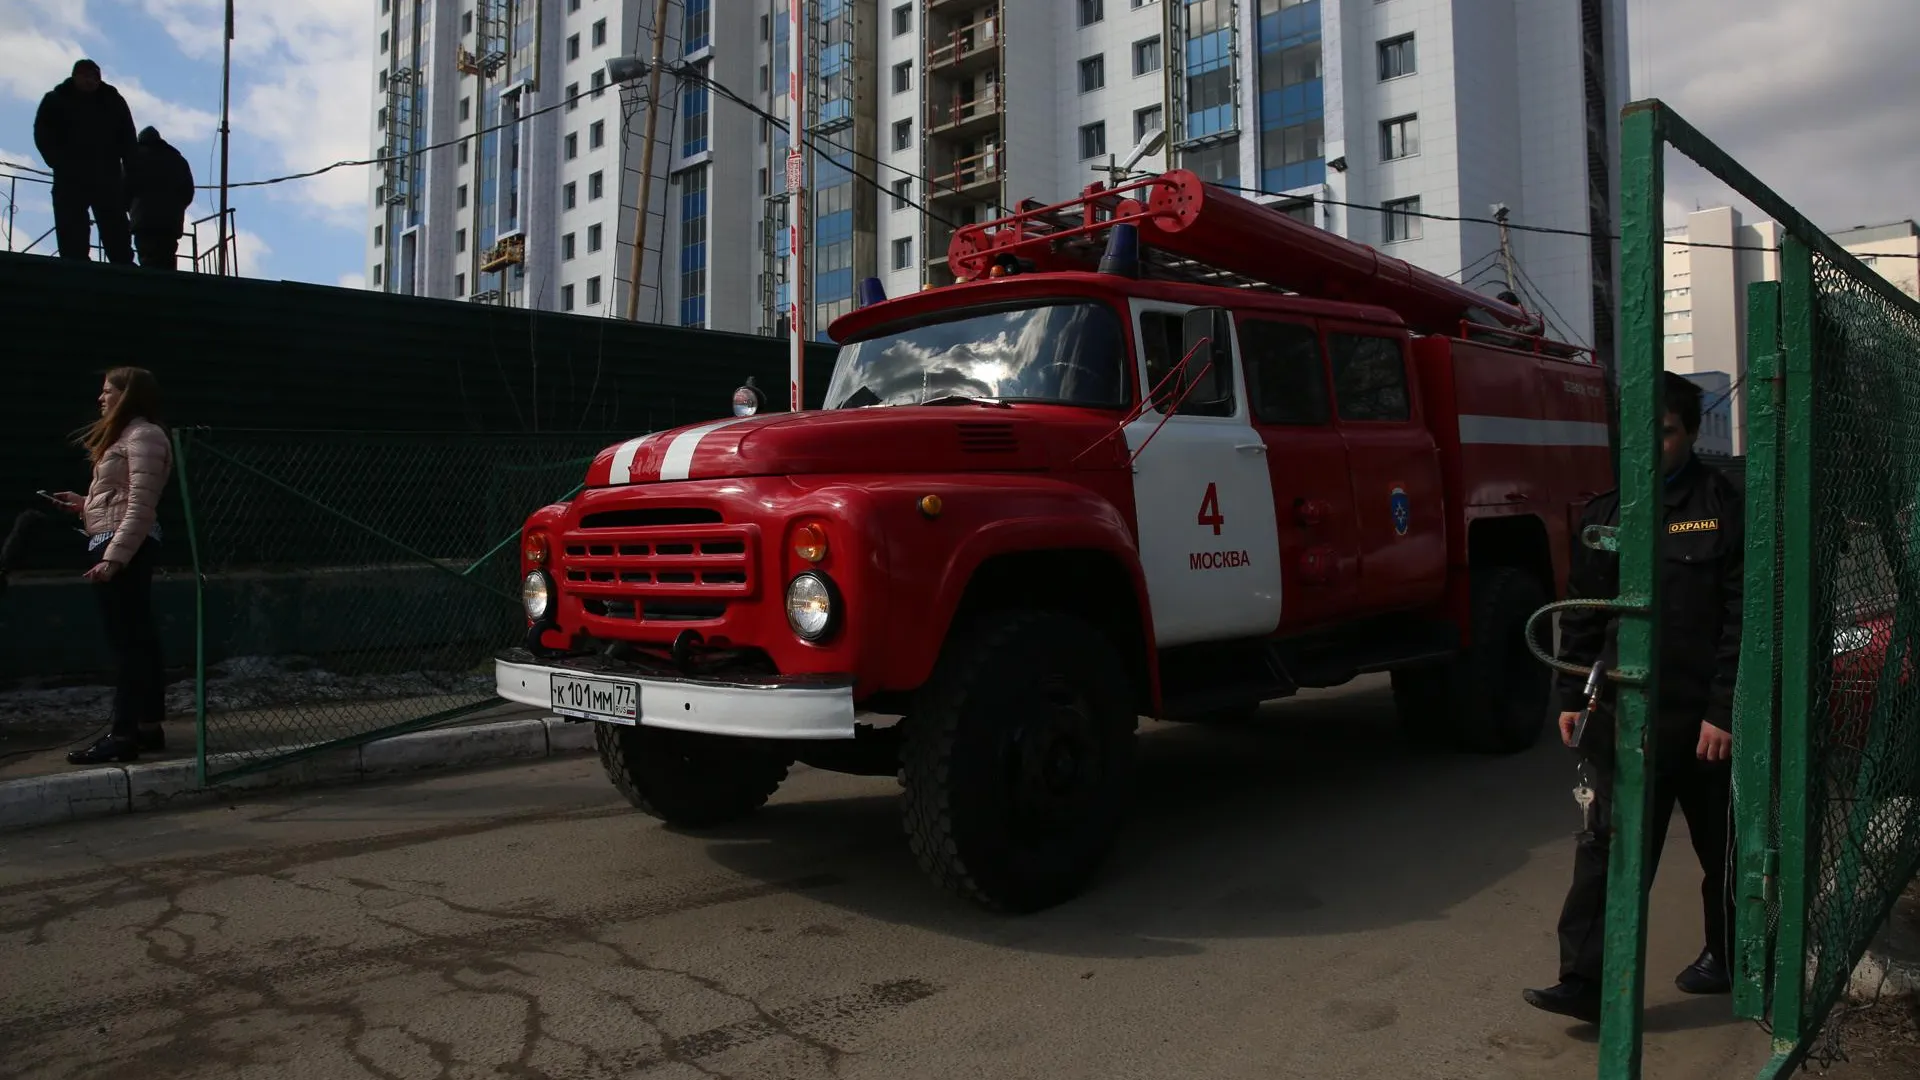 Автобус технического обслуживания горел в Москве